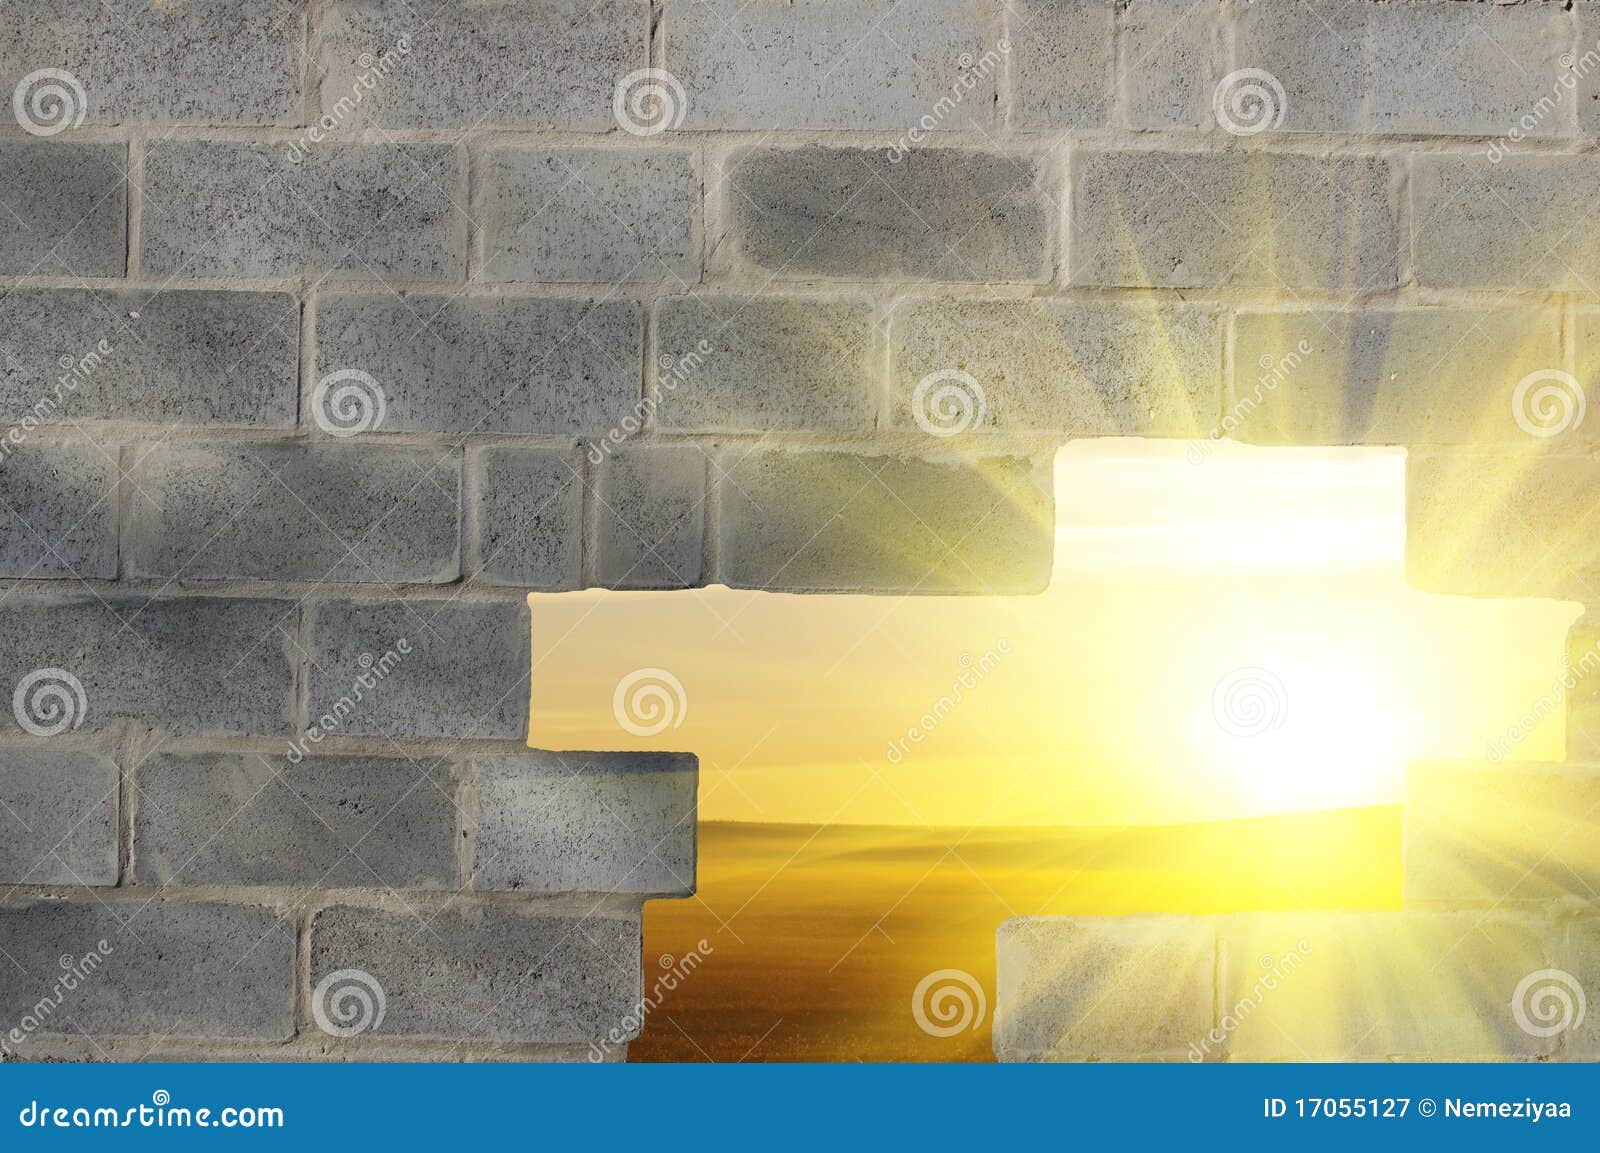 γκρίζος τοίχος τρυπών. λεπτός ορατός τοίχος ηλιοβασιλέματος τρυπών